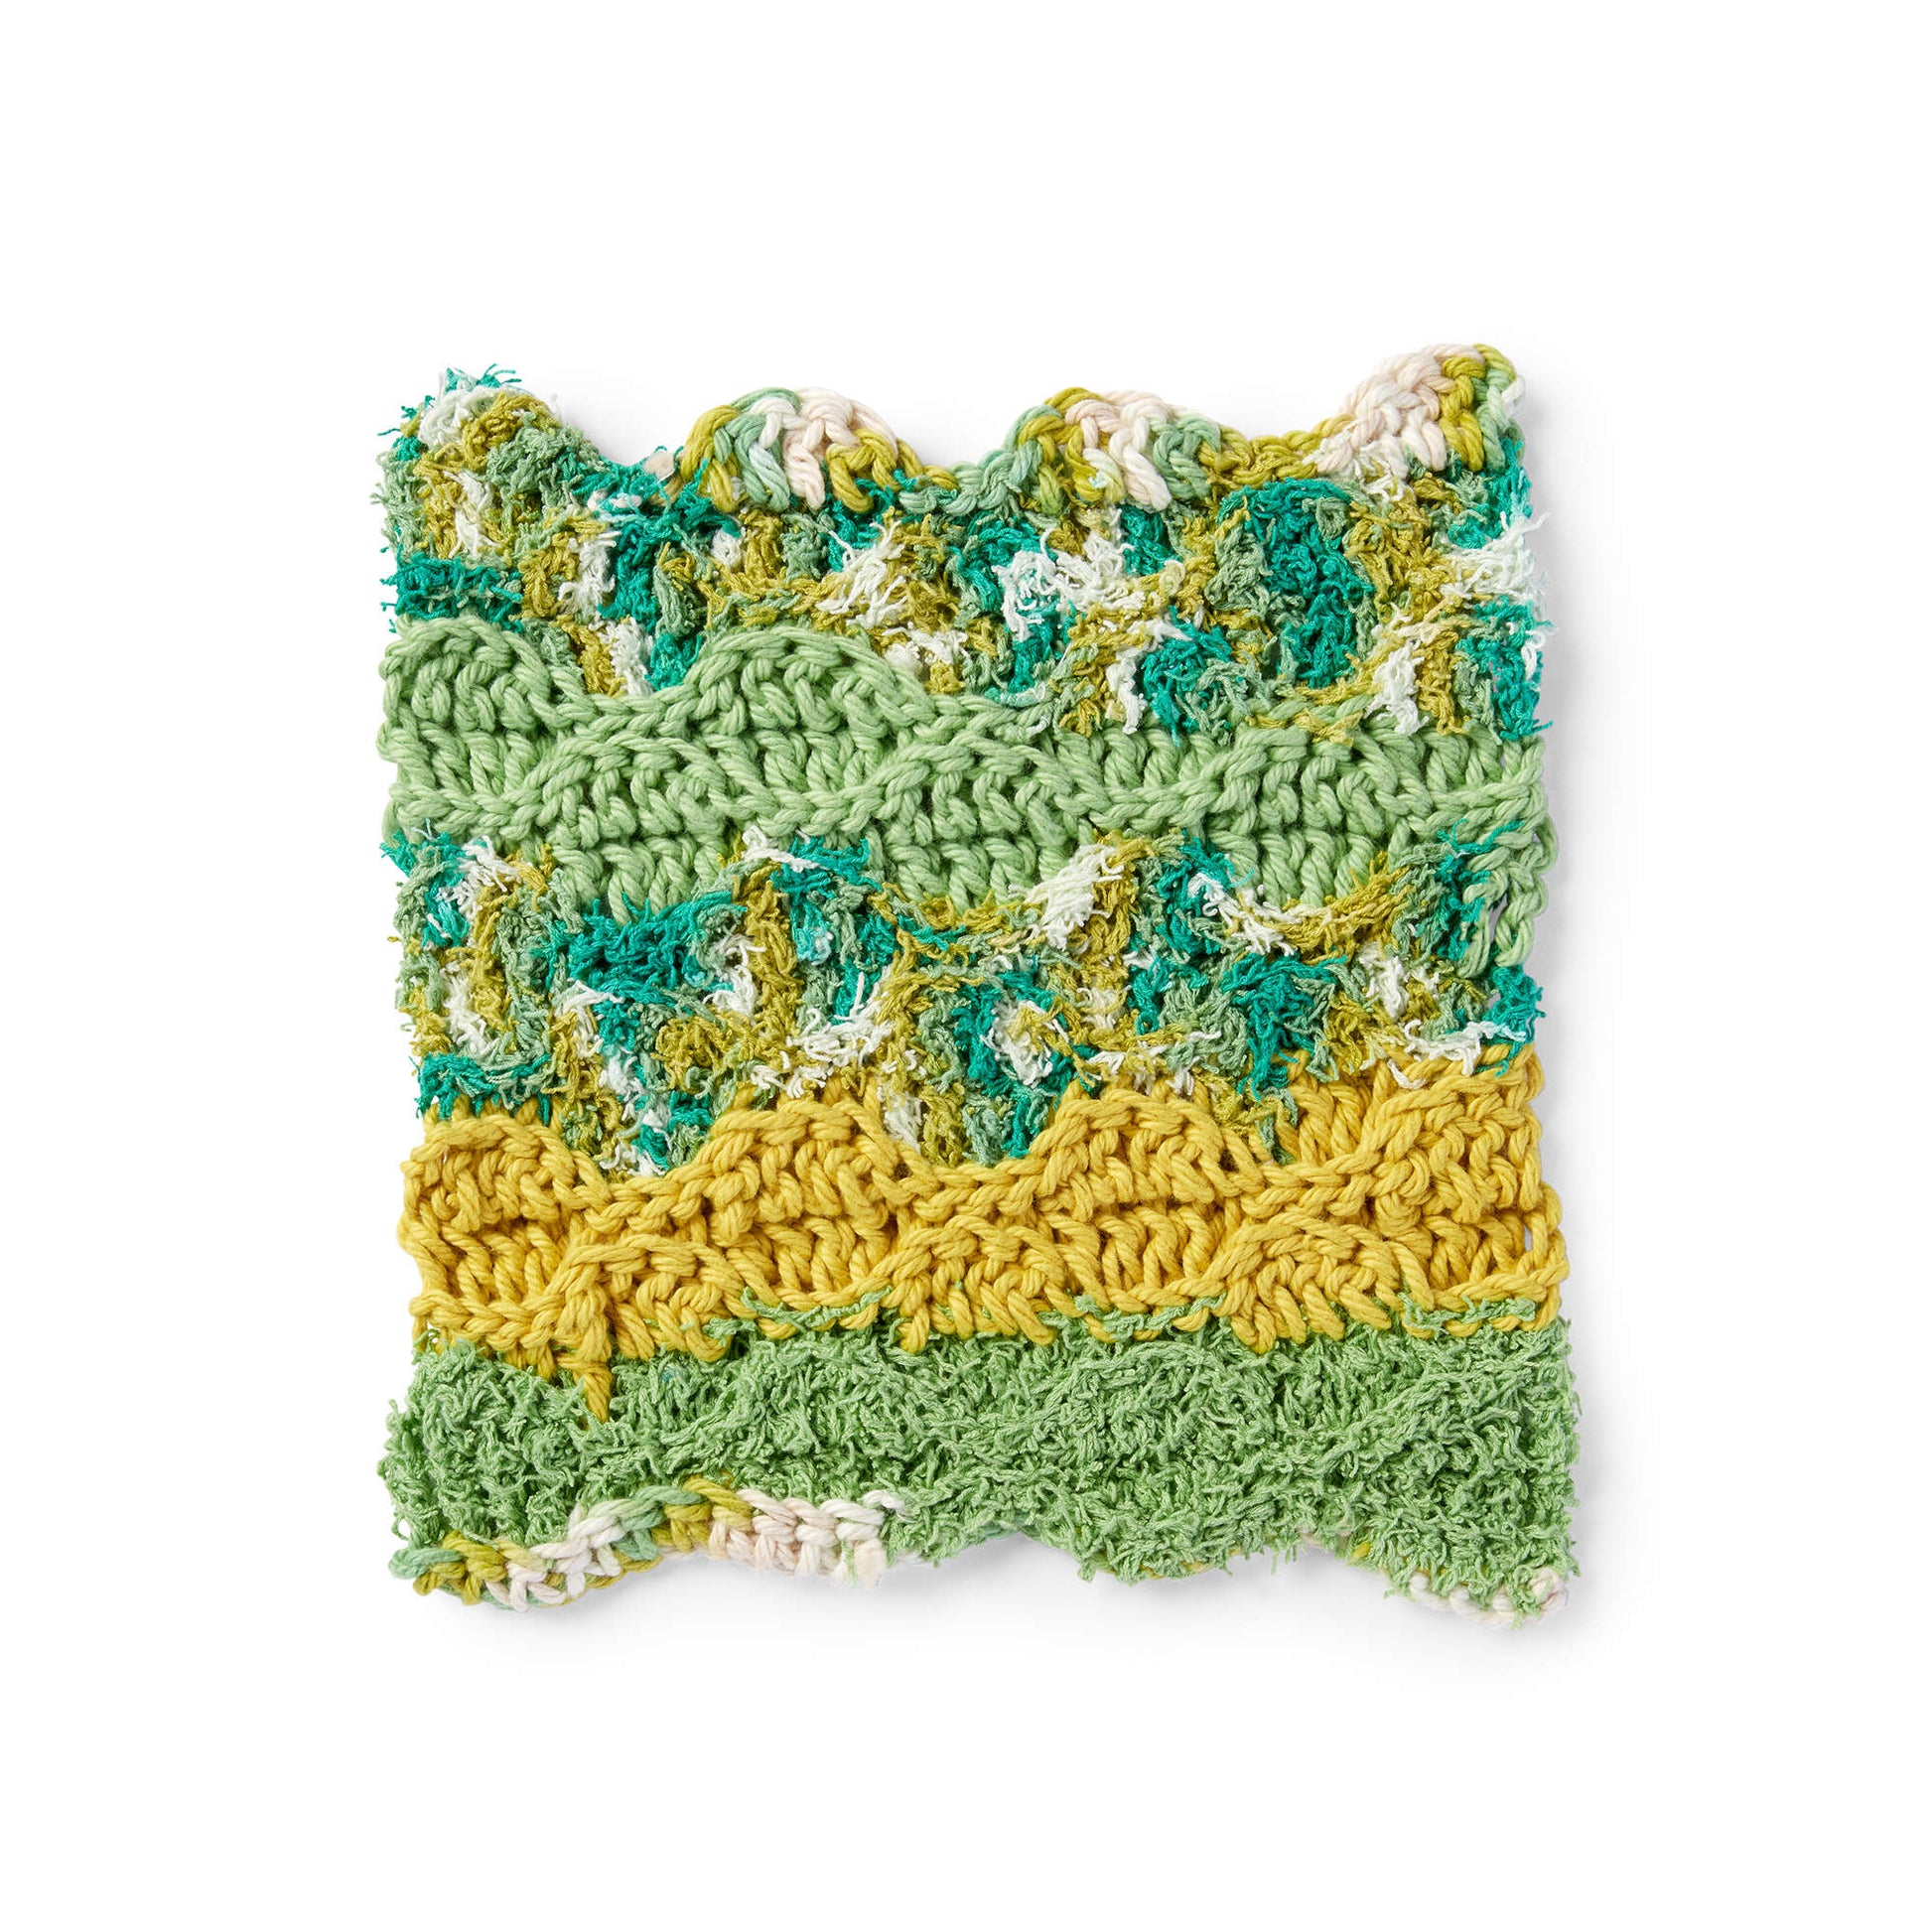 Lily Sugar'n Cream Rippling Wave Crochet Dishcloth Single Size